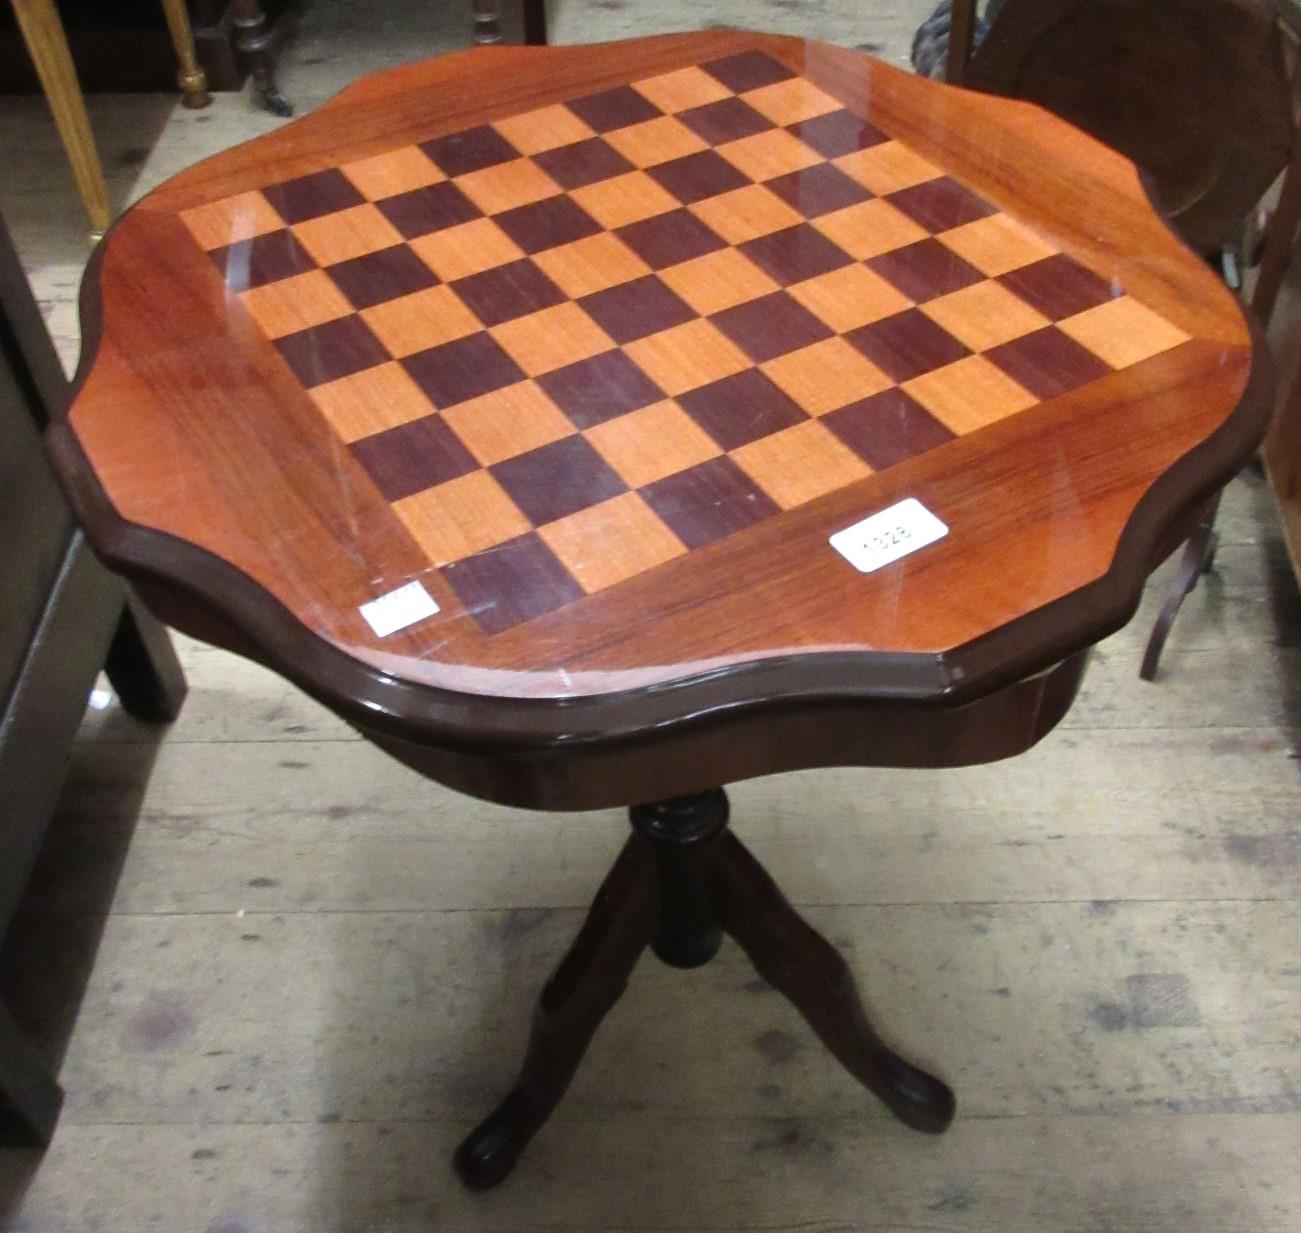 Reproduction circular mahogany games table, a mahogany three tier folding cake stand and a